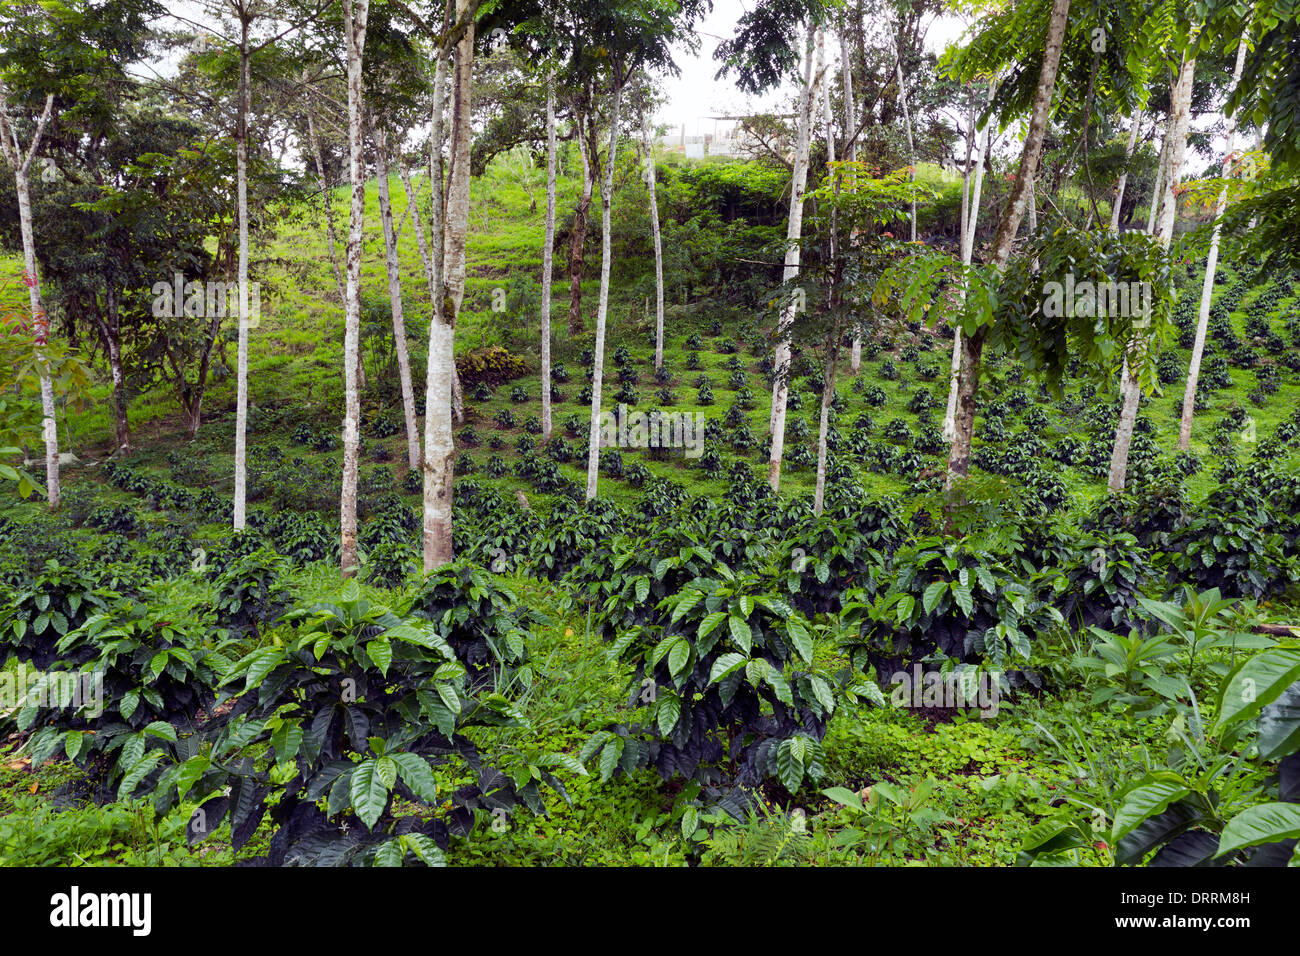 Los arbustos de café cultivado a la sombra en una plantación de café orgánico en las laderas occidentales de la Cordillera de Los Andes en Ecuador Foto de stock